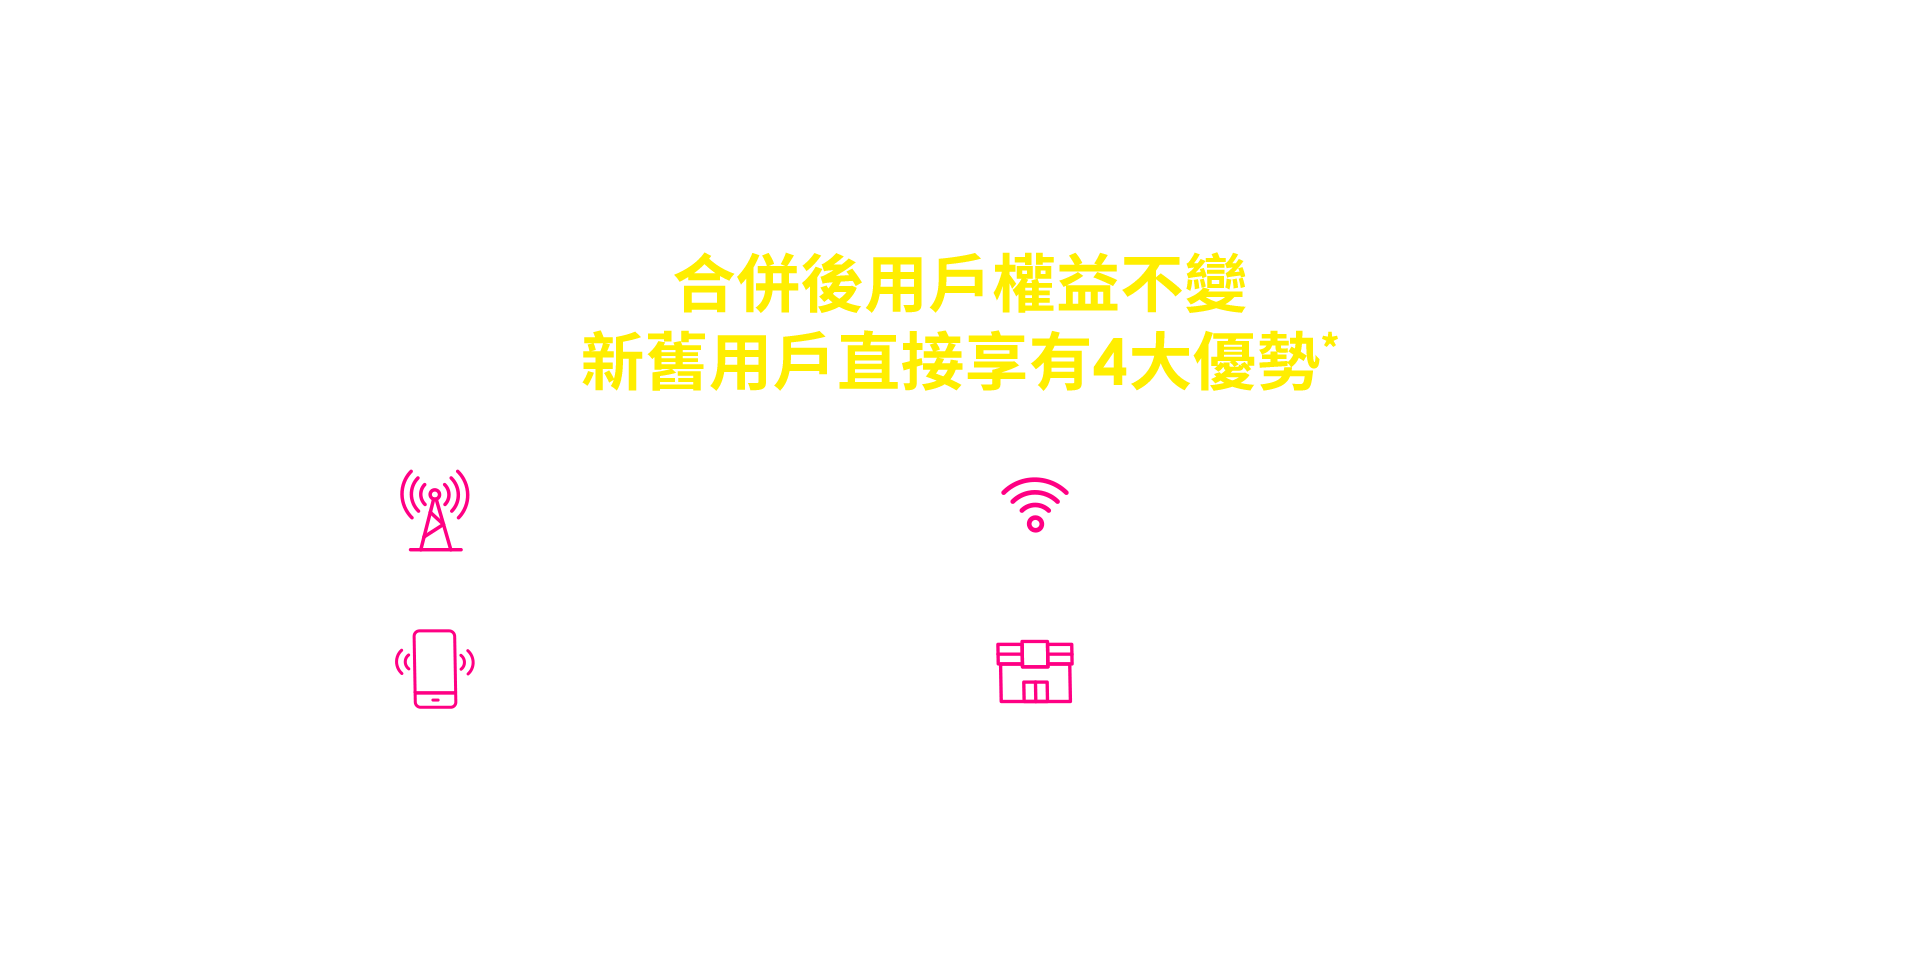 台灣之星+台灣大哥大 5G台灣隊